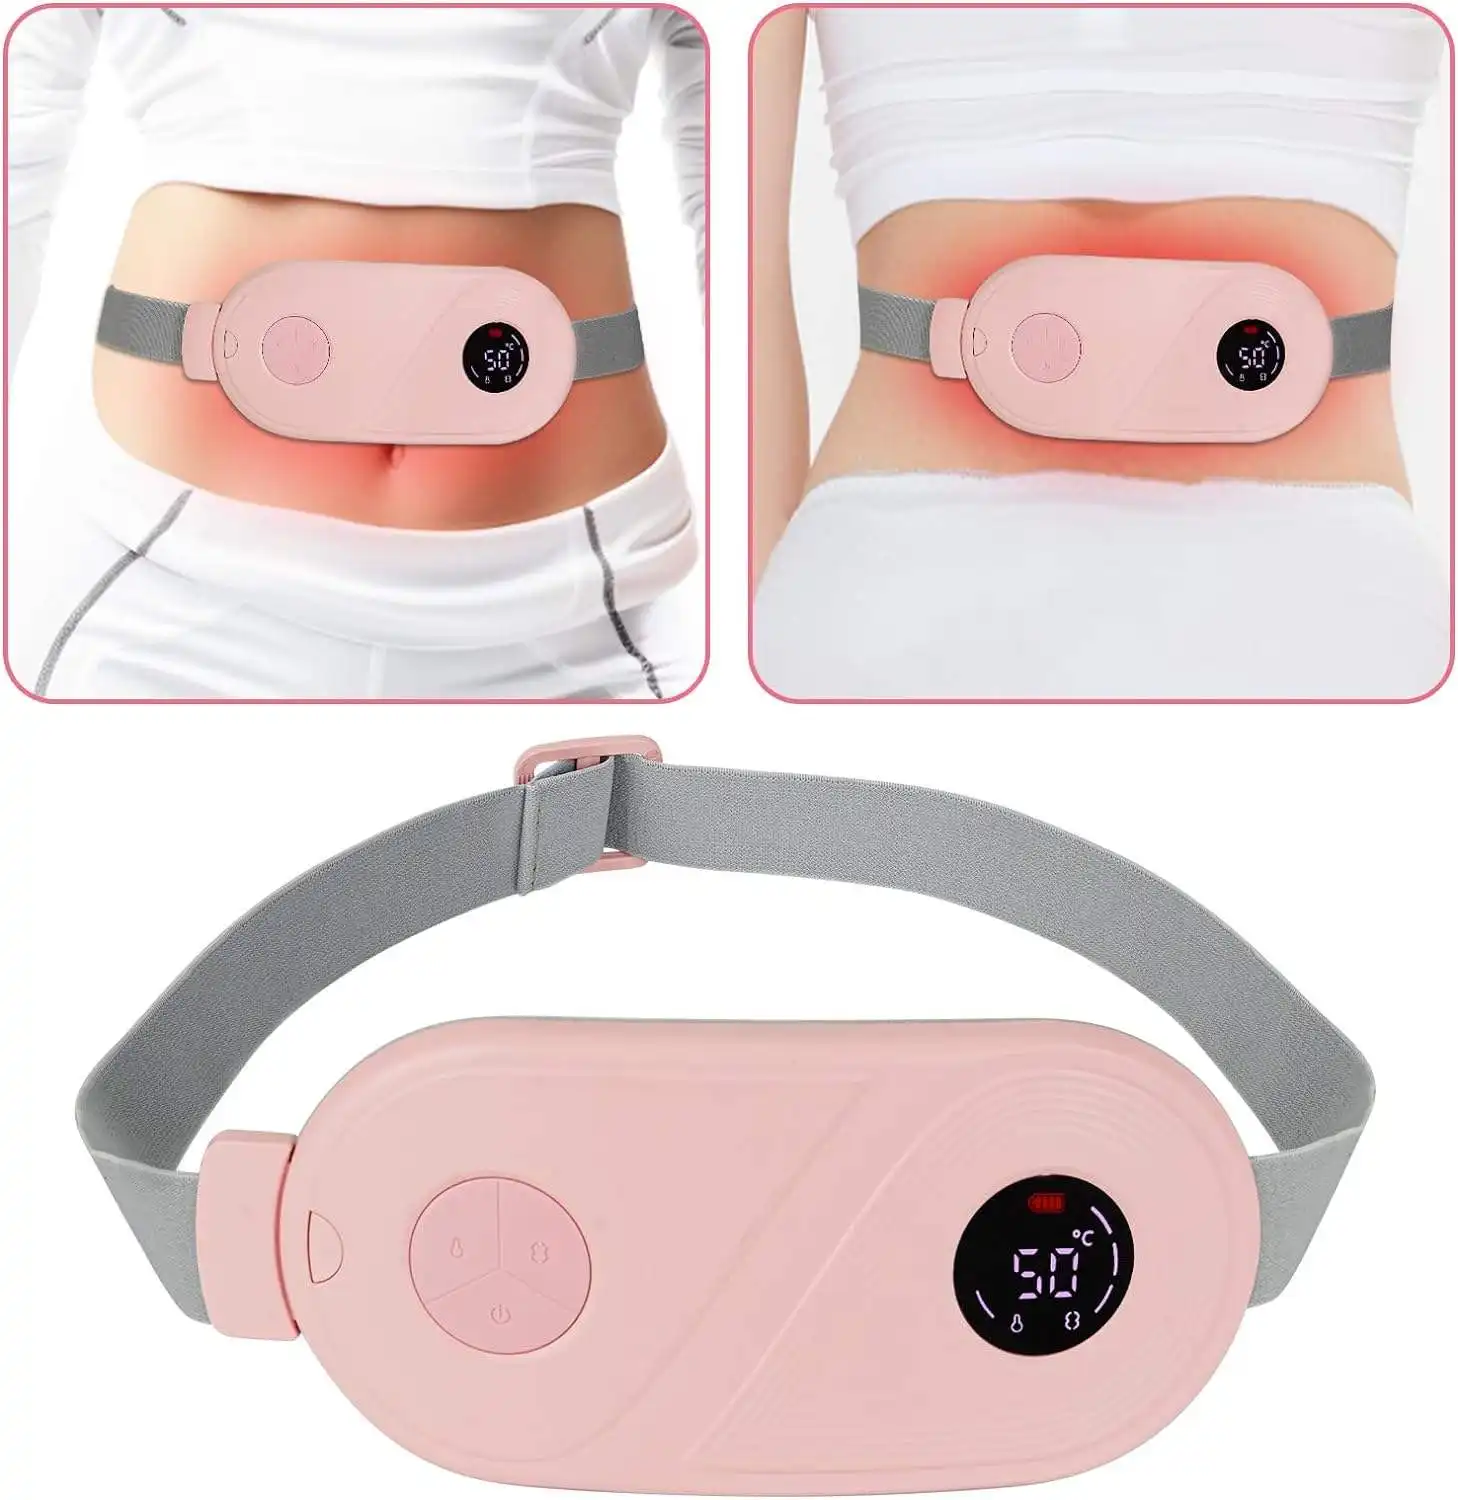 Display digitale portatile senza fili di riscaldamento mestruale riscaldamento rapido periodo di massaggio cintura avvolgente per donne sollievo dal dolore mestruale